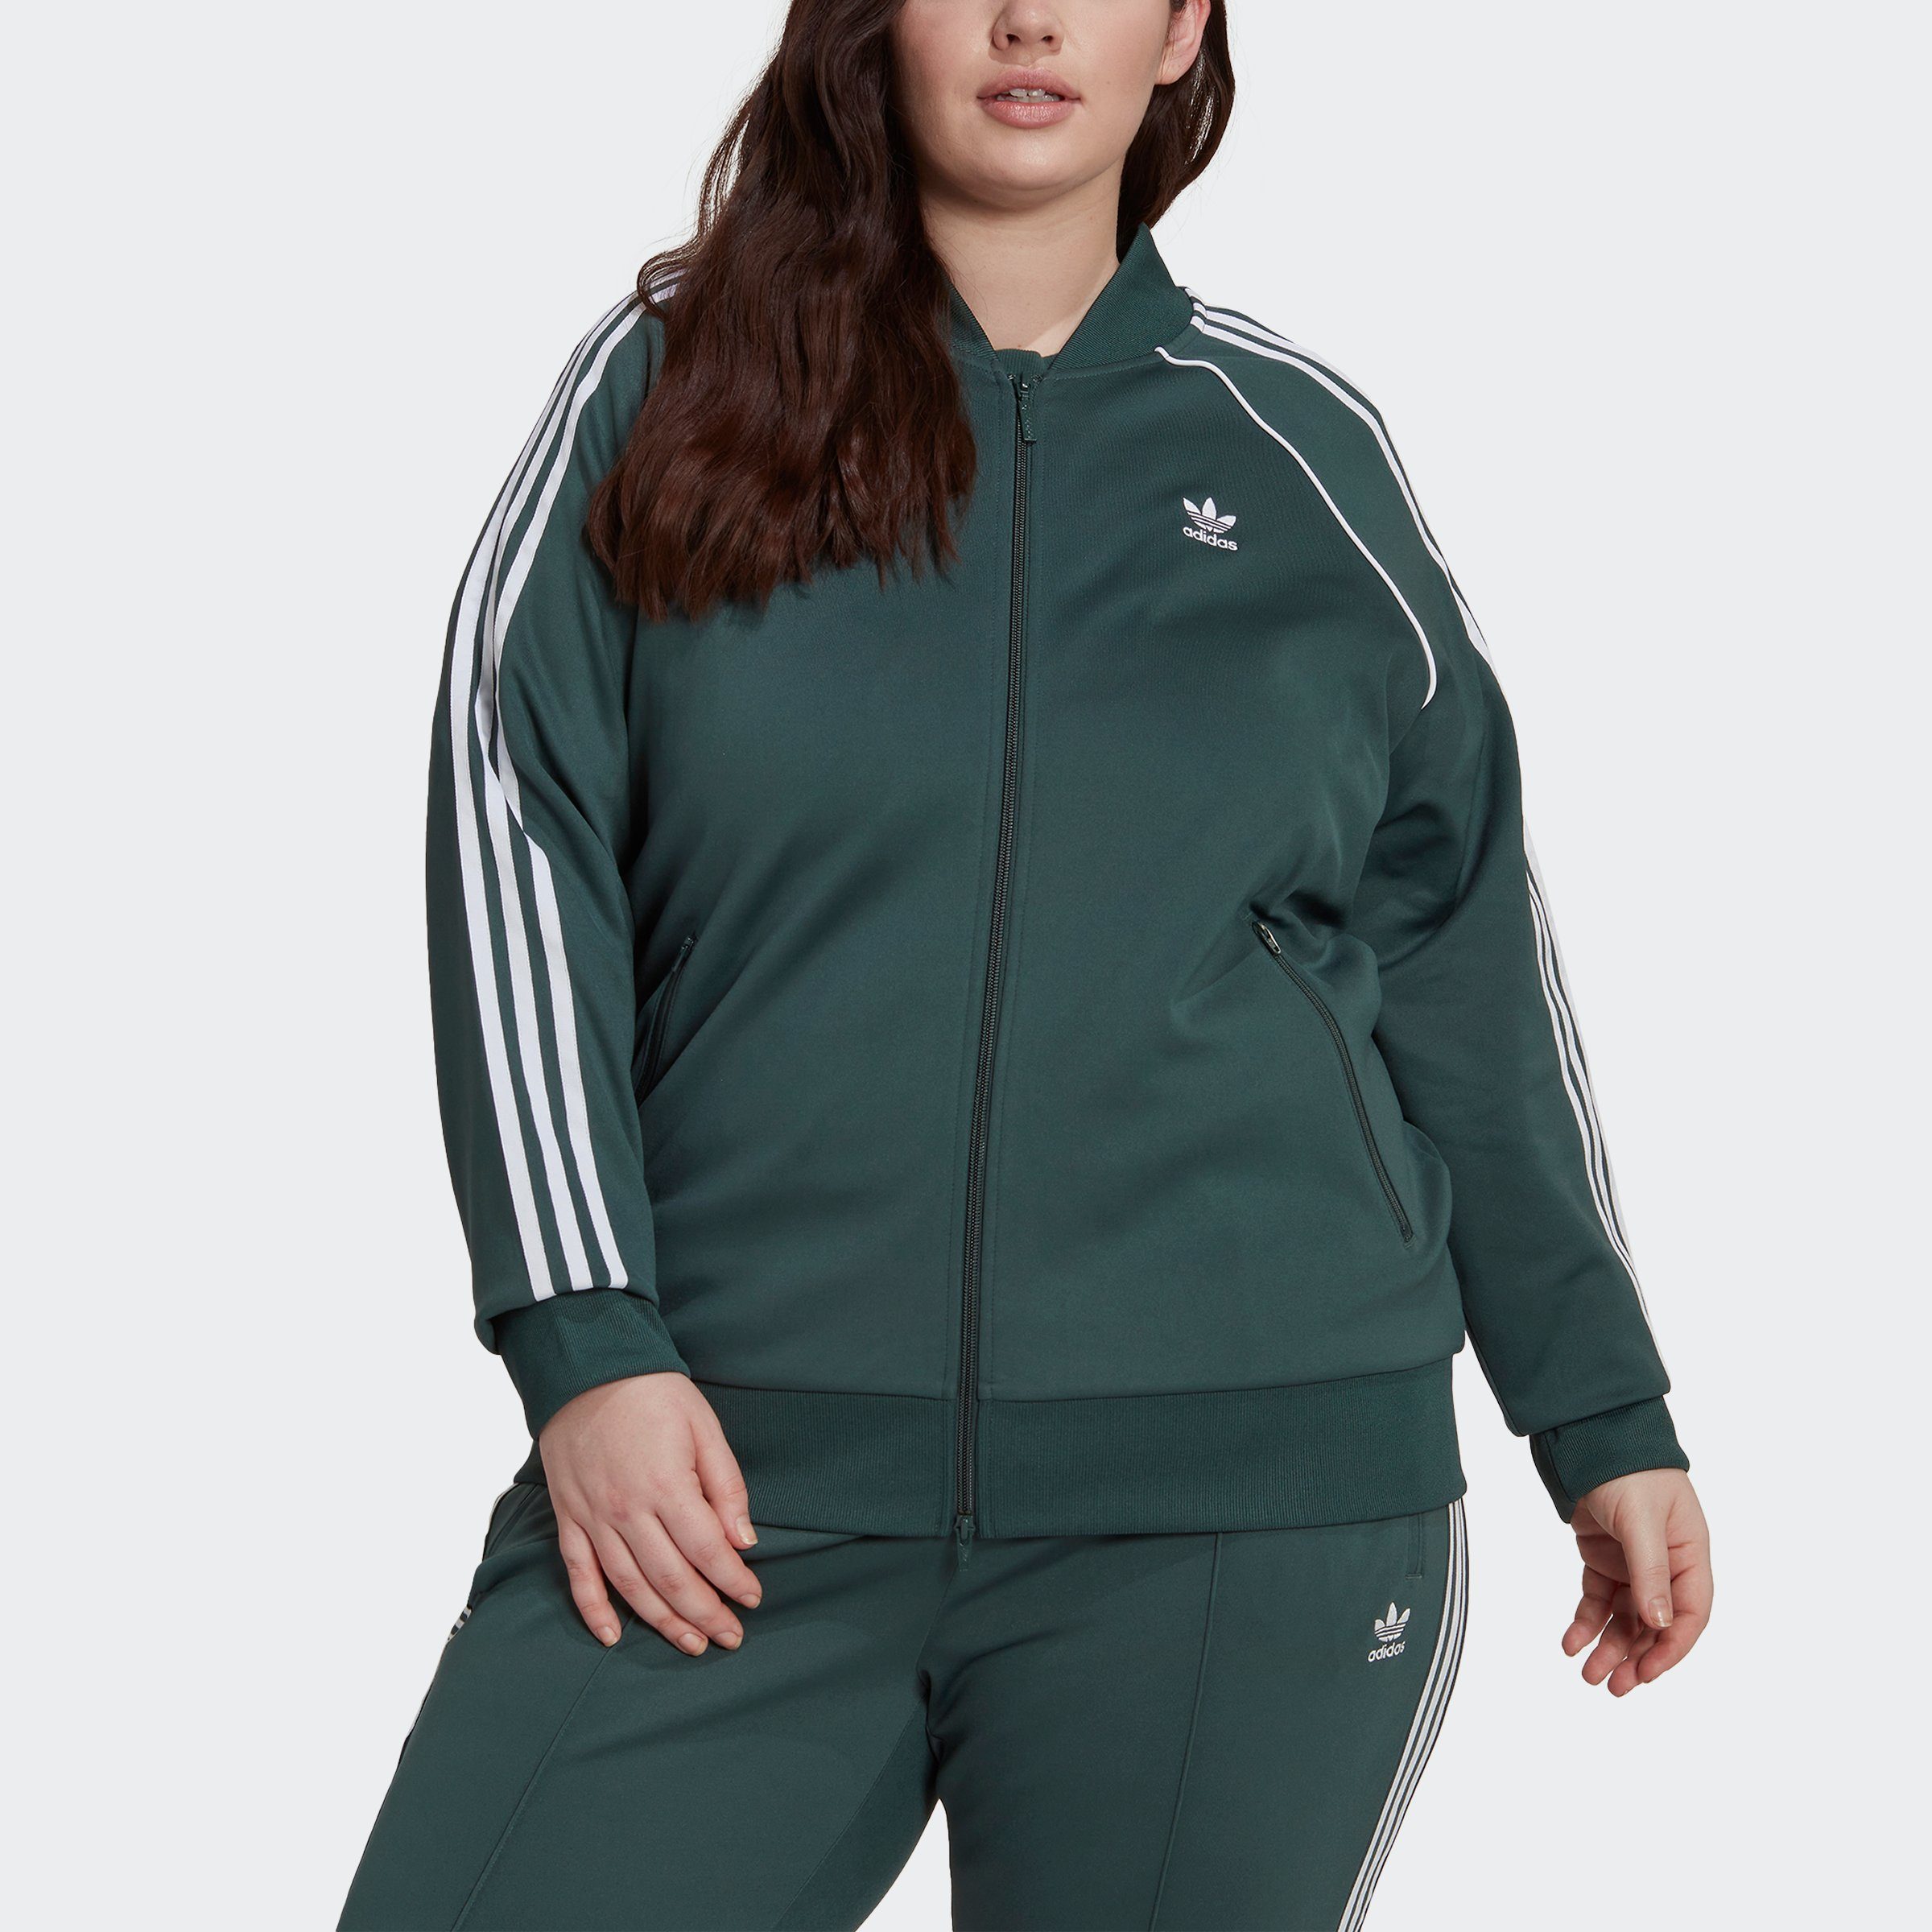 Grüne adidas Damen Trainingsjacken online kaufen | OTTO